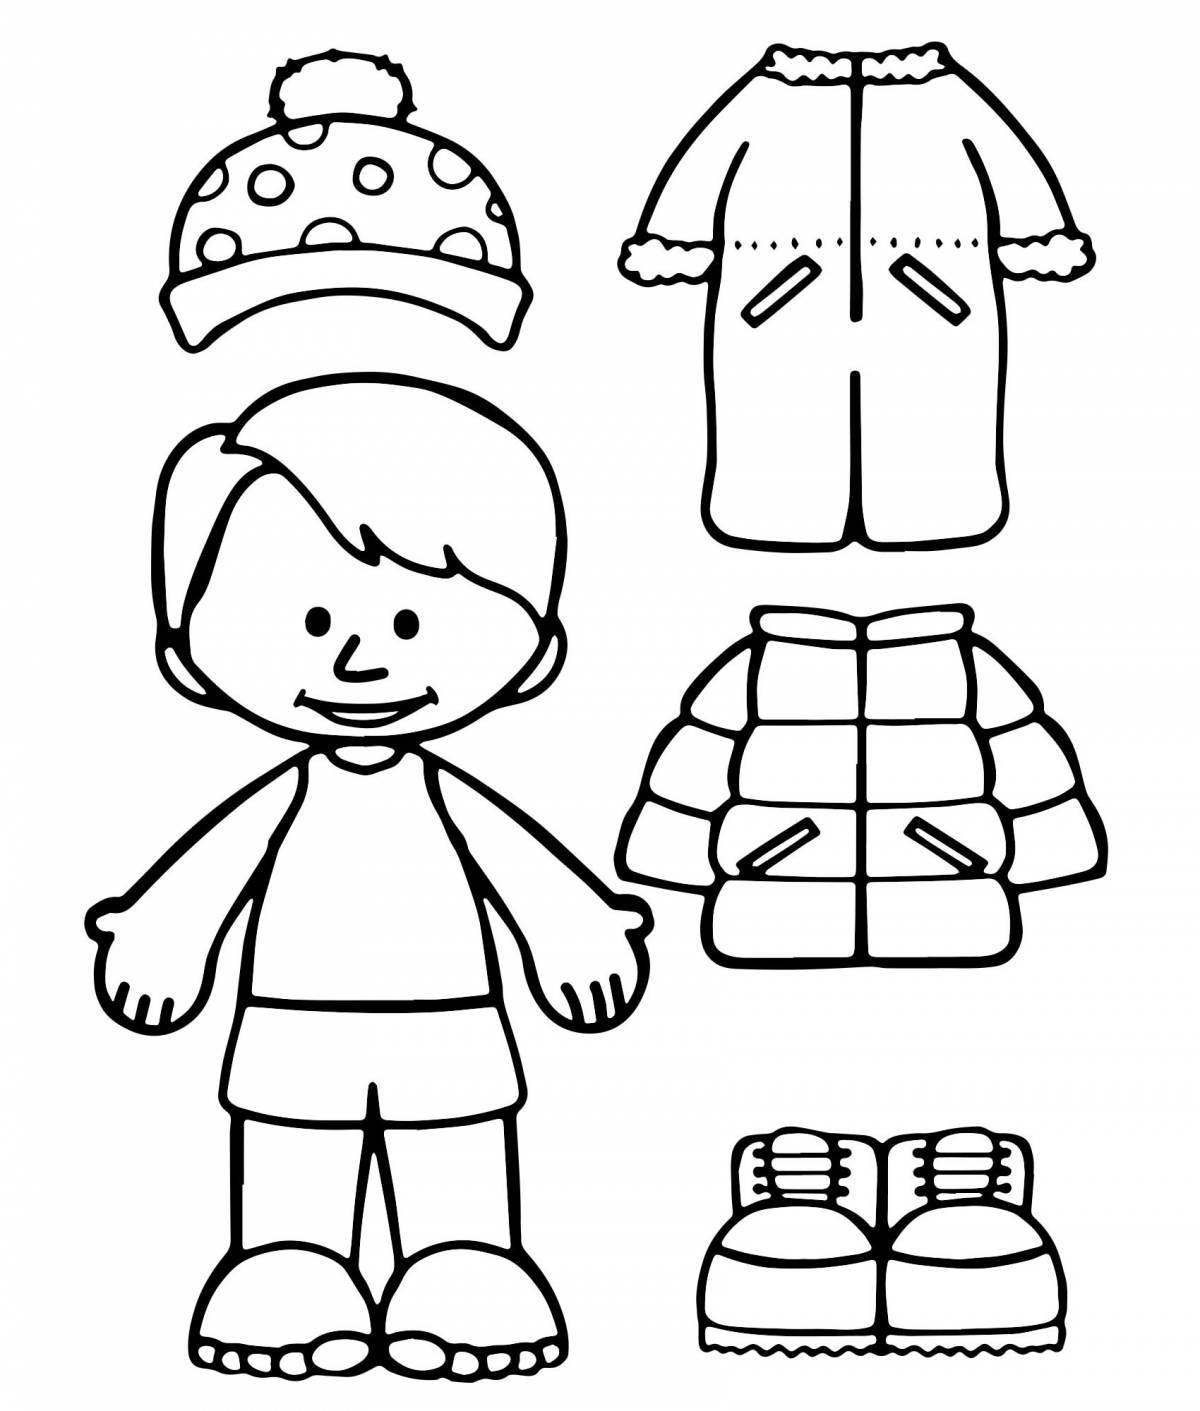 Coloring page crazy preschool winter clothes